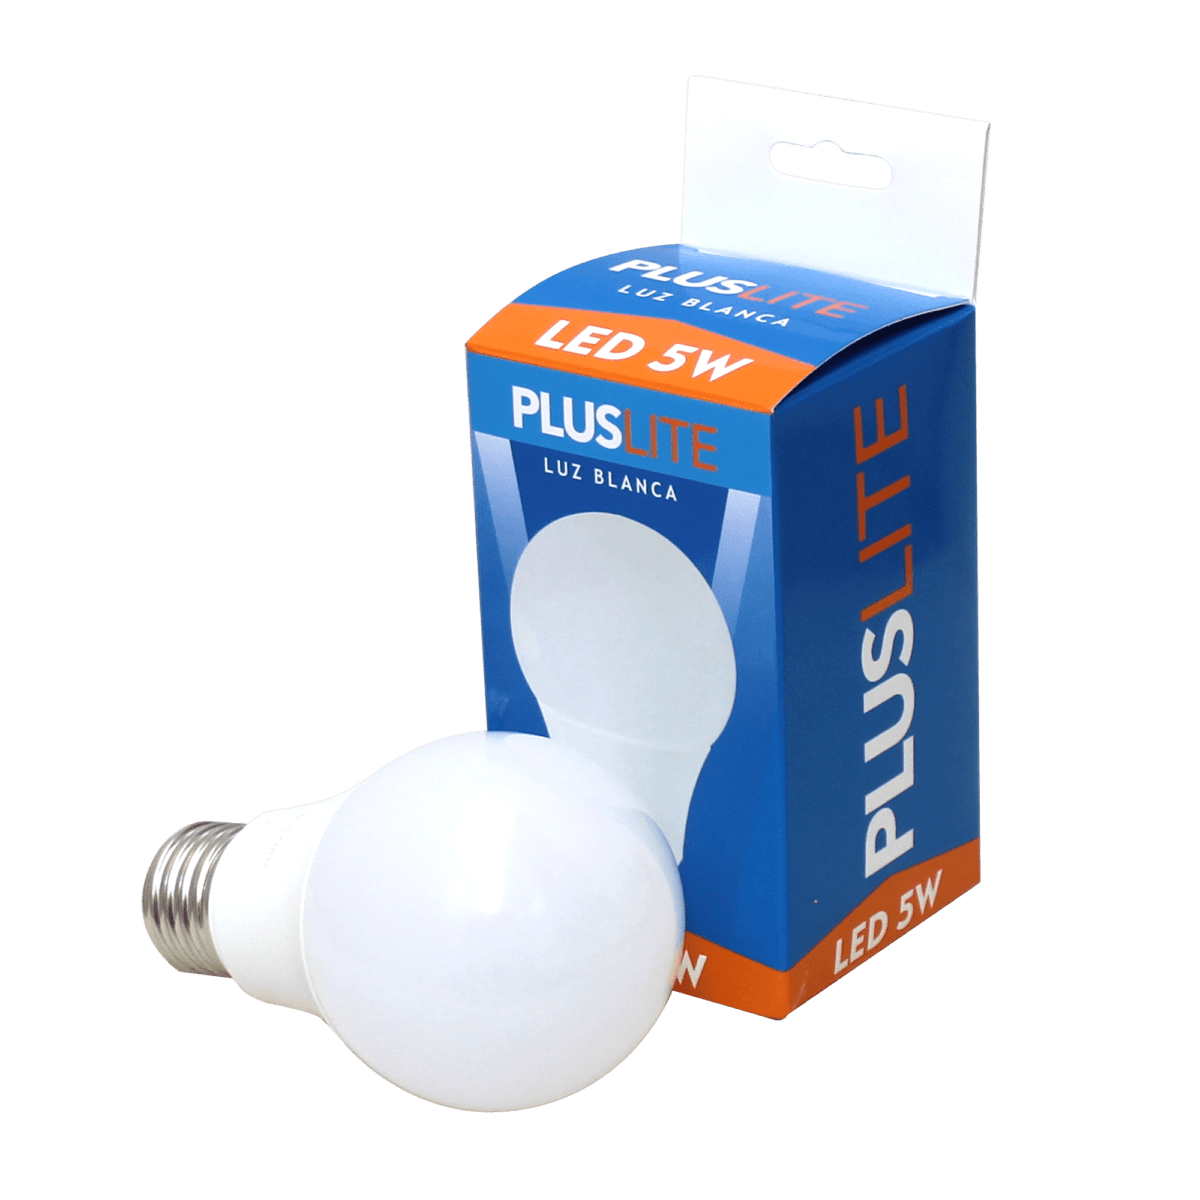 Bulbo LED 5W Pluslite Luz Blanca E27 1225 1